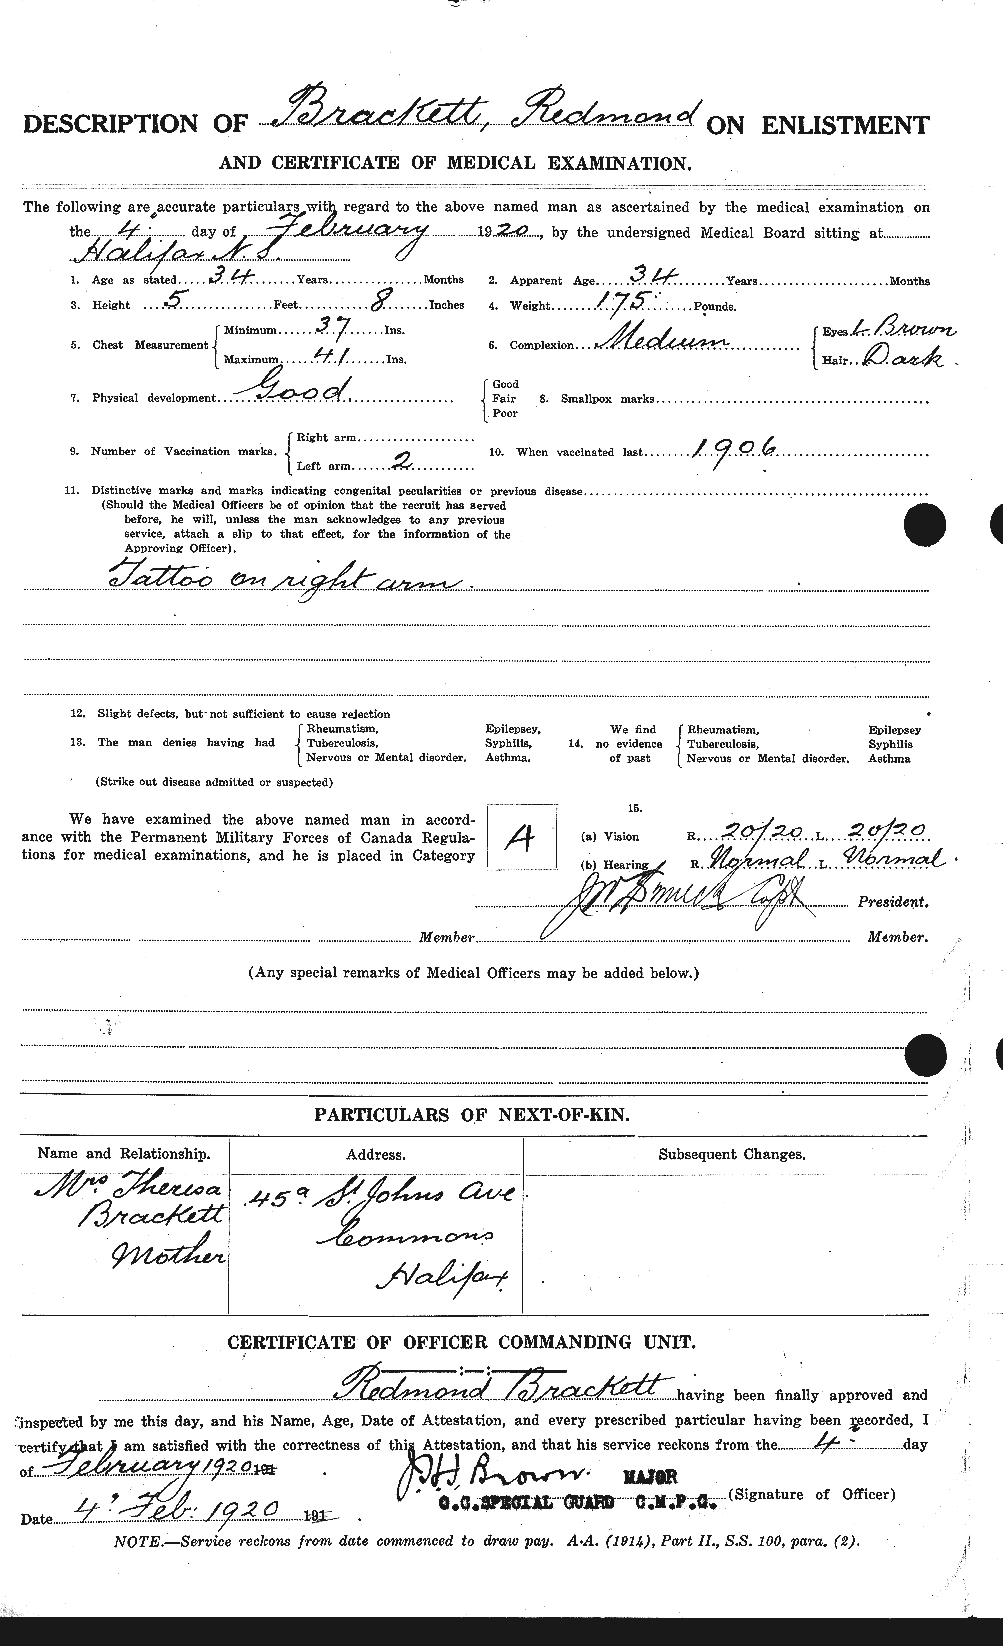 Dossiers du Personnel de la Première Guerre mondiale - CEC 254740b